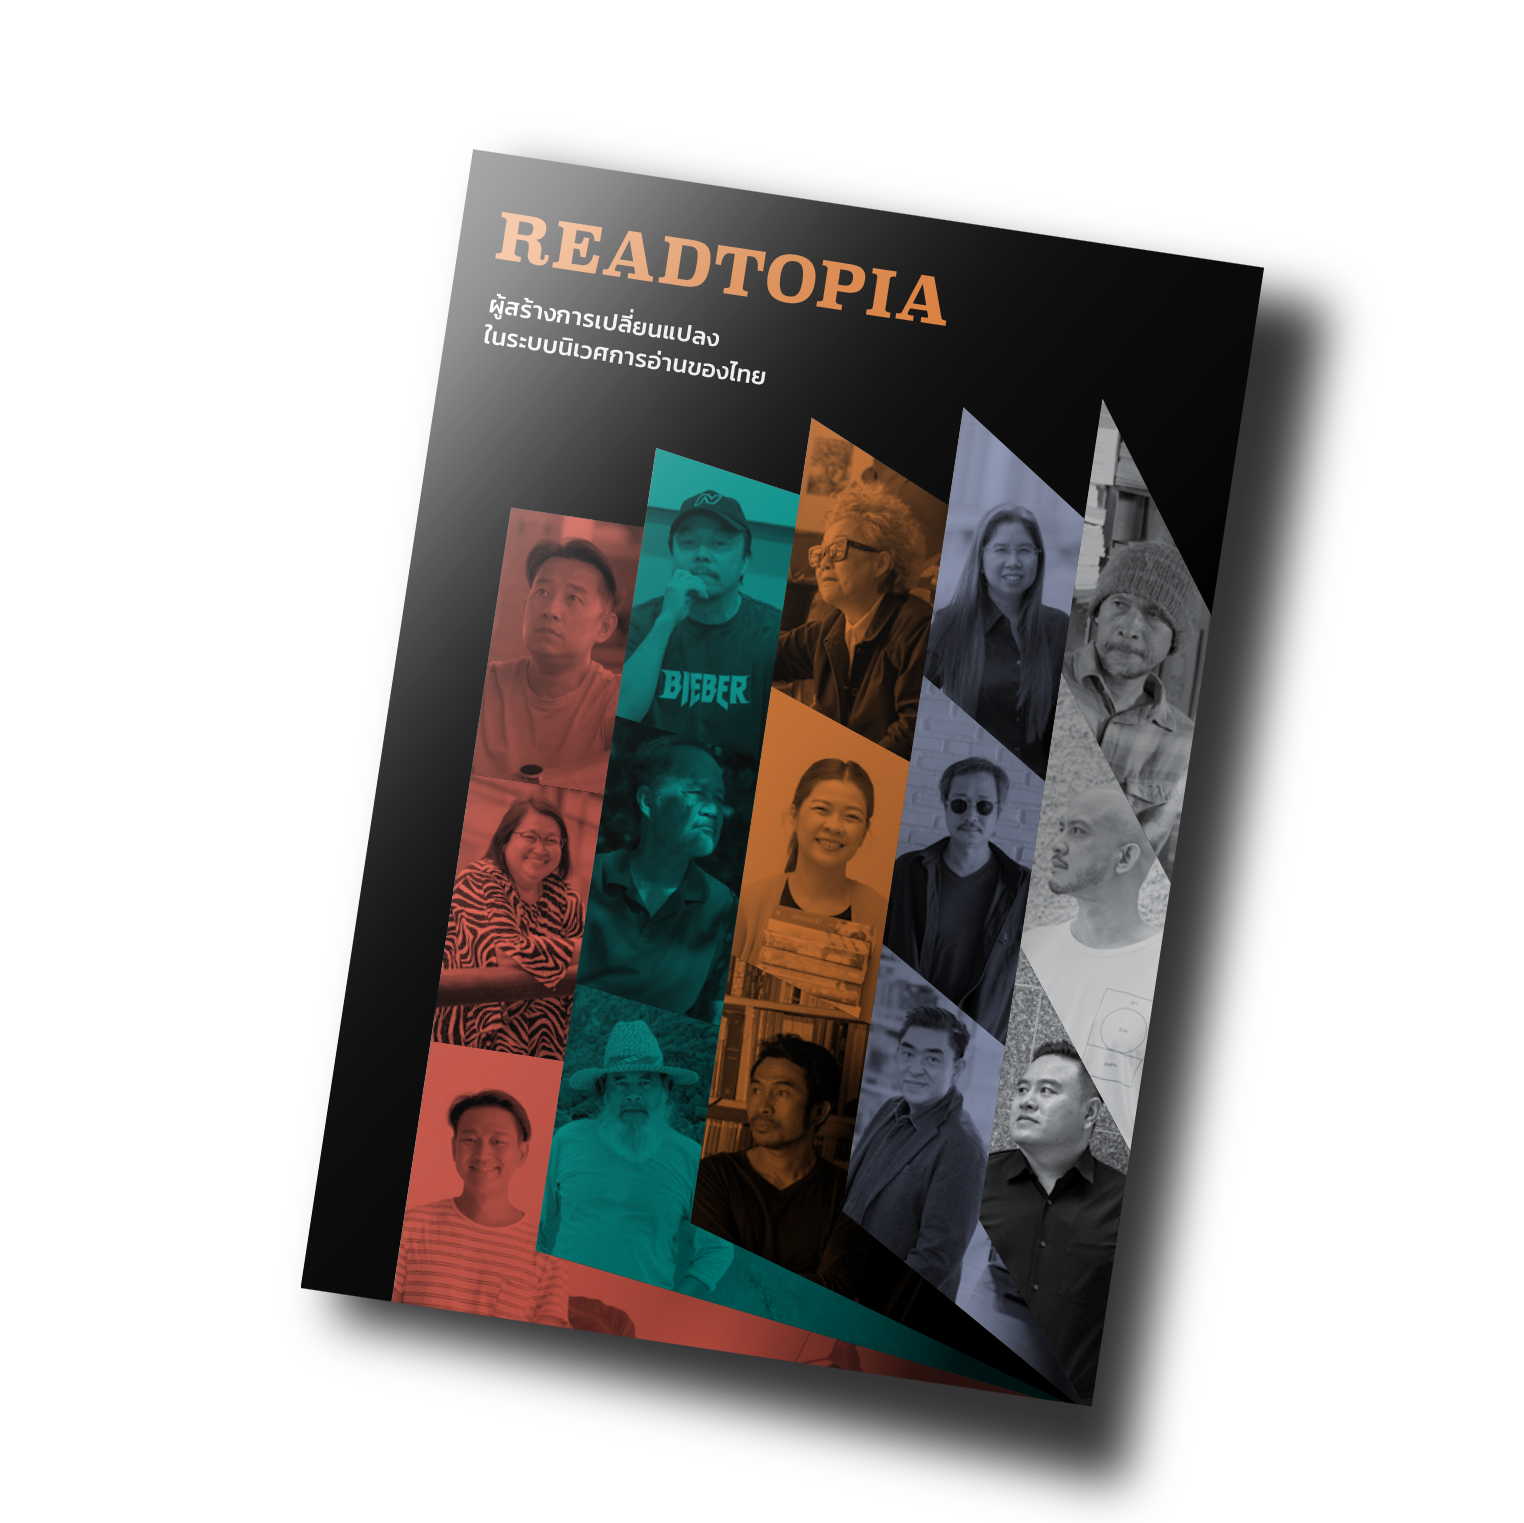 Readtopia ผู้สร้างการเปลี่ยนแปลงในระบบนิเวศการอ่านของไทย